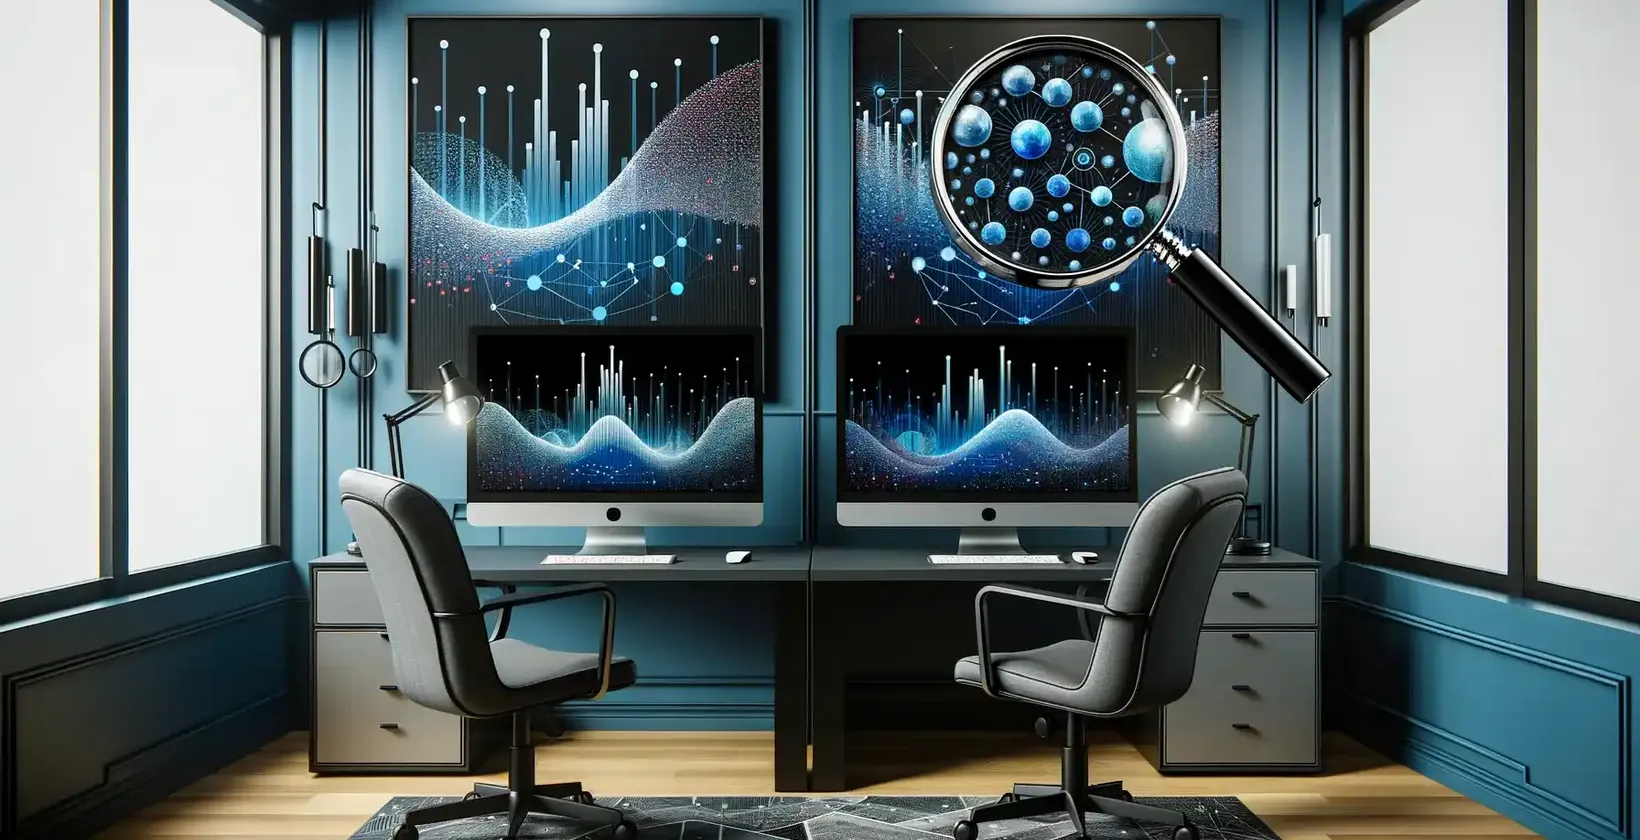 Et sofistikeret kontor med flere computerskærme, der viser detaljerede datagrafer og molekylære strukturer.